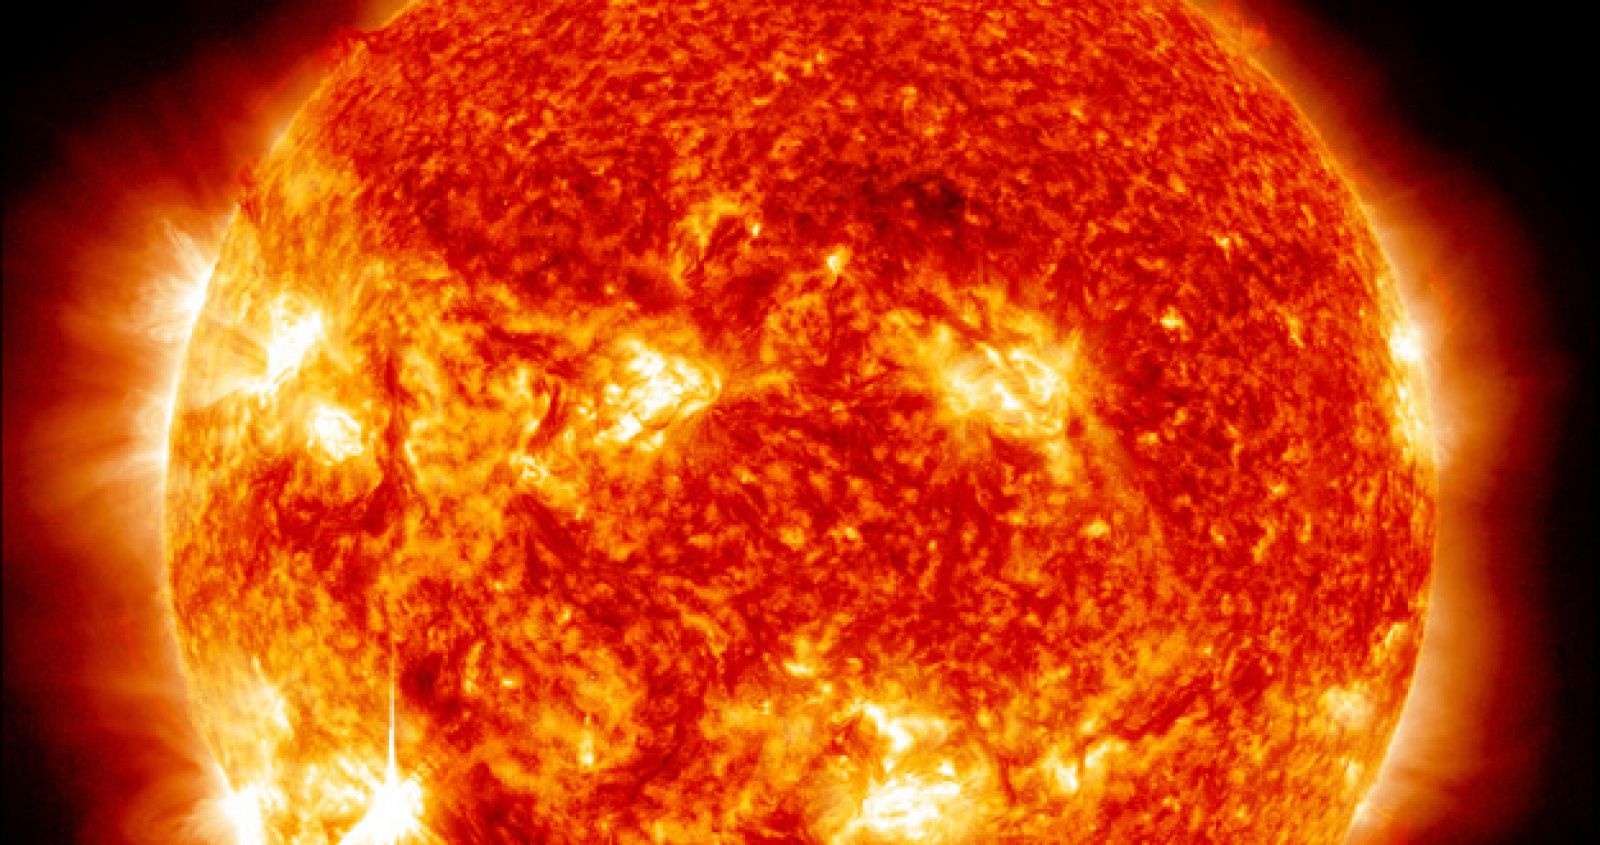 La fusión nuclear requiere instalaciones que aguanten temperaturas como las del Sol. Imagen de la Nasa